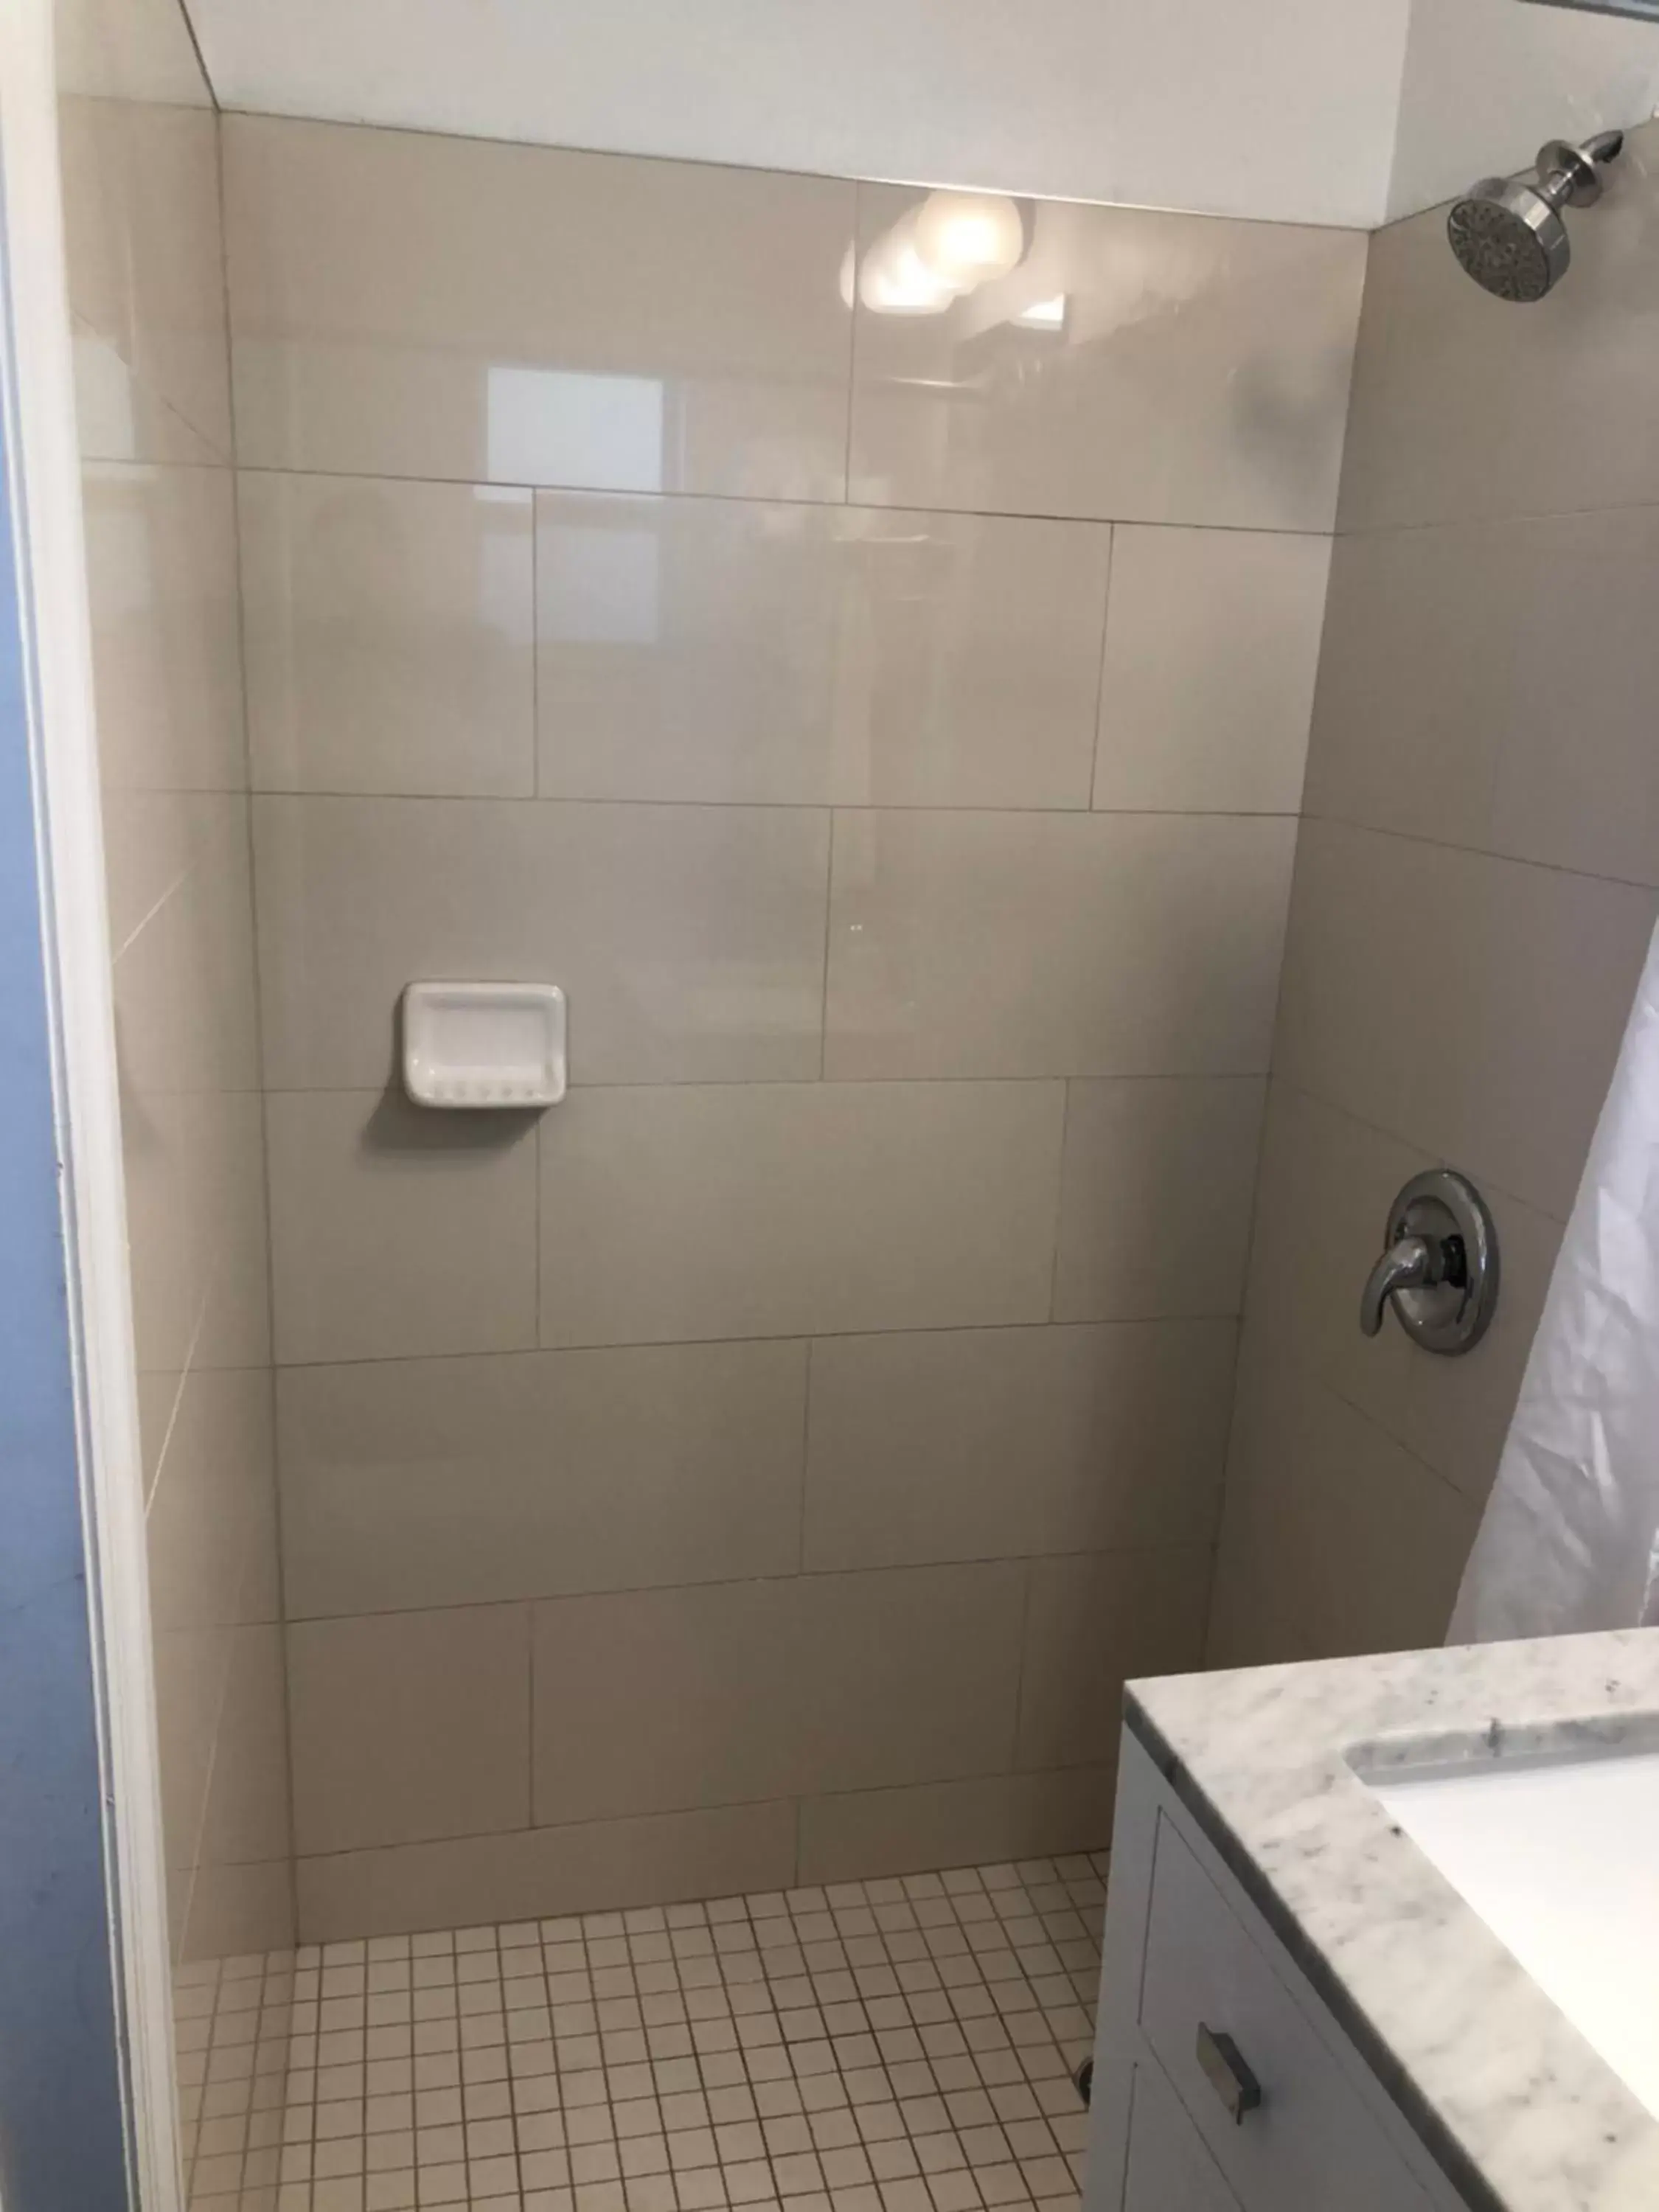 Bathroom in Drop Anchor Resort & Marina